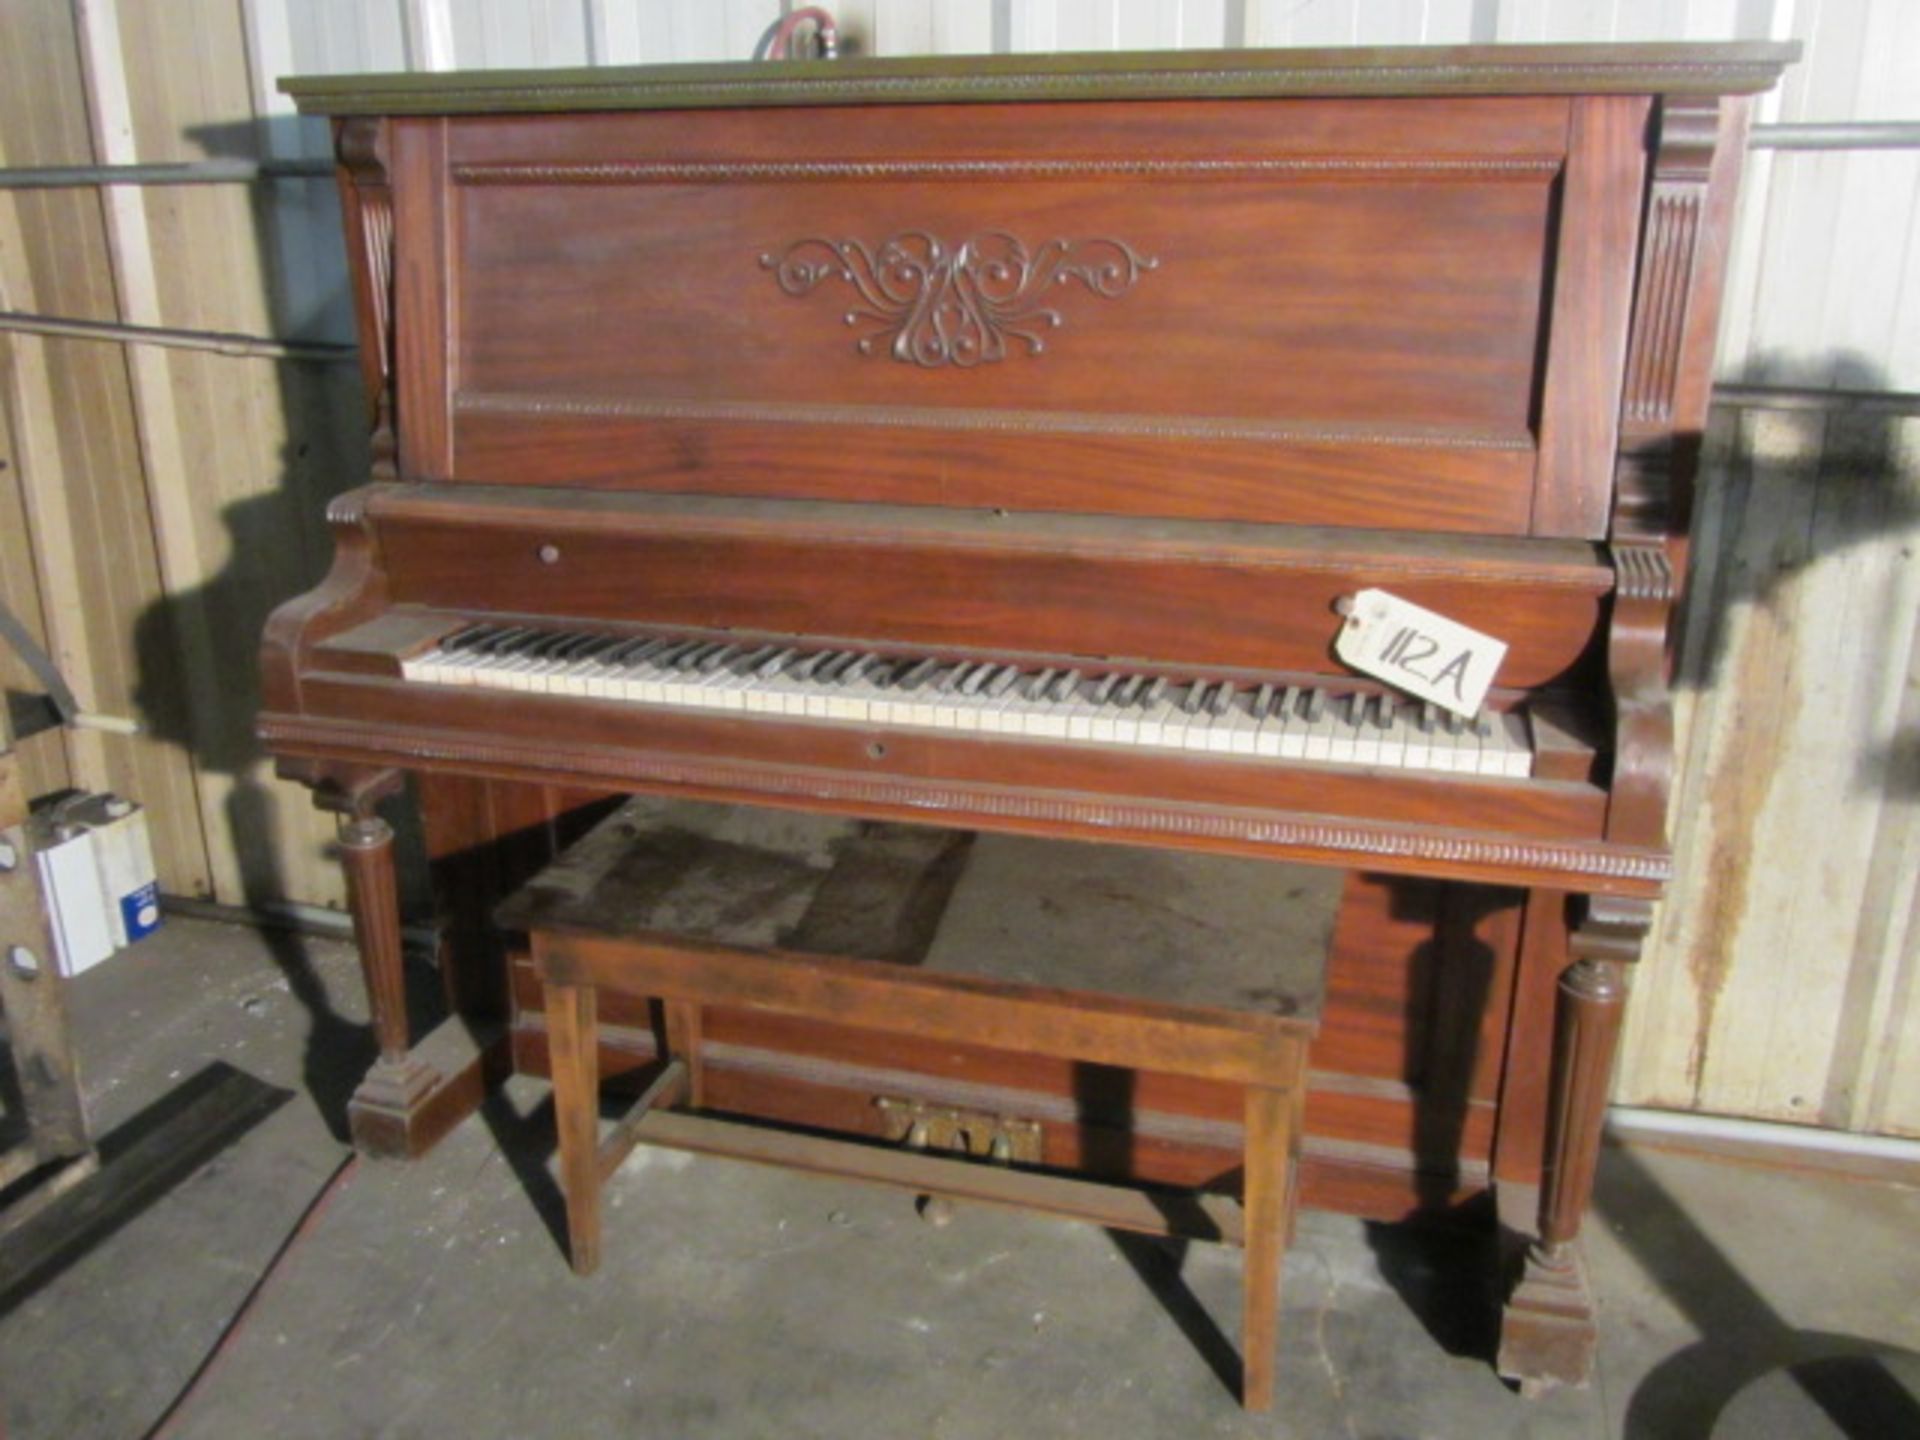 The Richmond Piano Company Model 51237 Piano